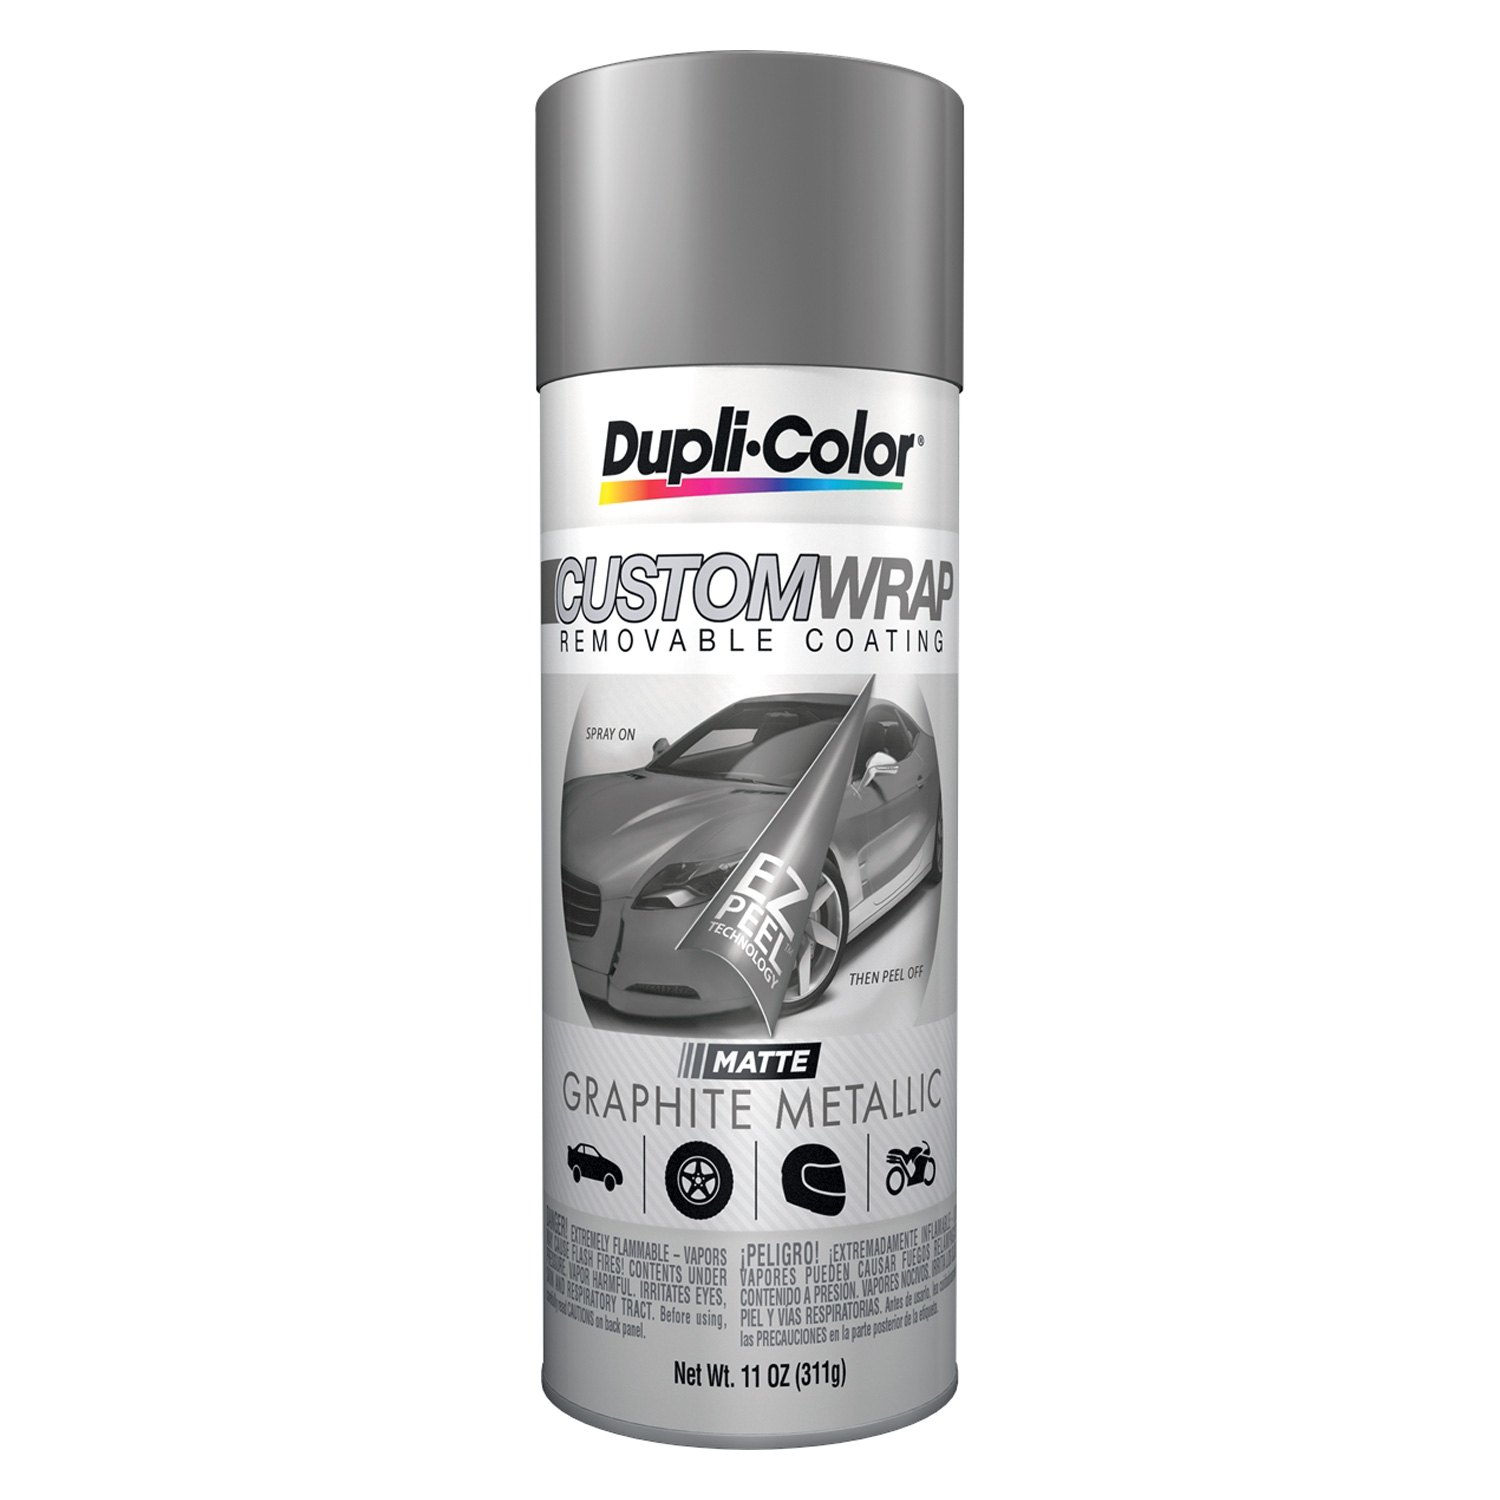 Dupli-Color ® - Custom Wrap Automotive Removable Paint.